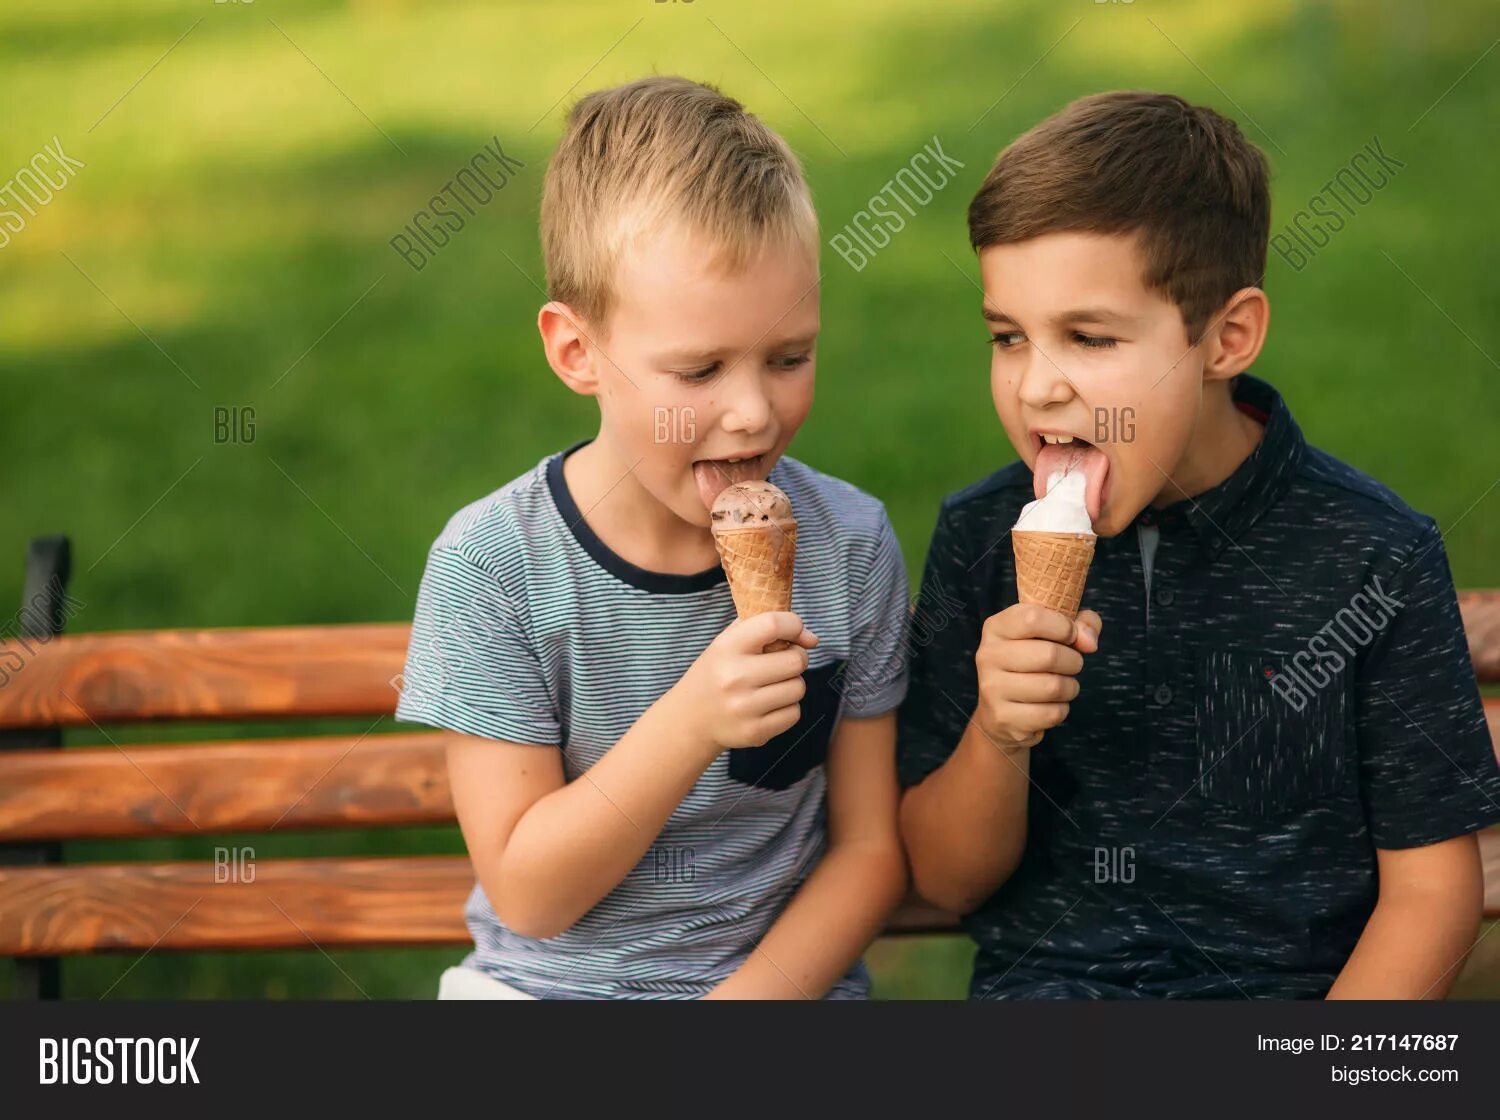 В столовой уже стояли два мальчика. Двое детей едят мороженое. Школьники едят мороженое. Школьник с мороженым. Мальчик и мороженое.